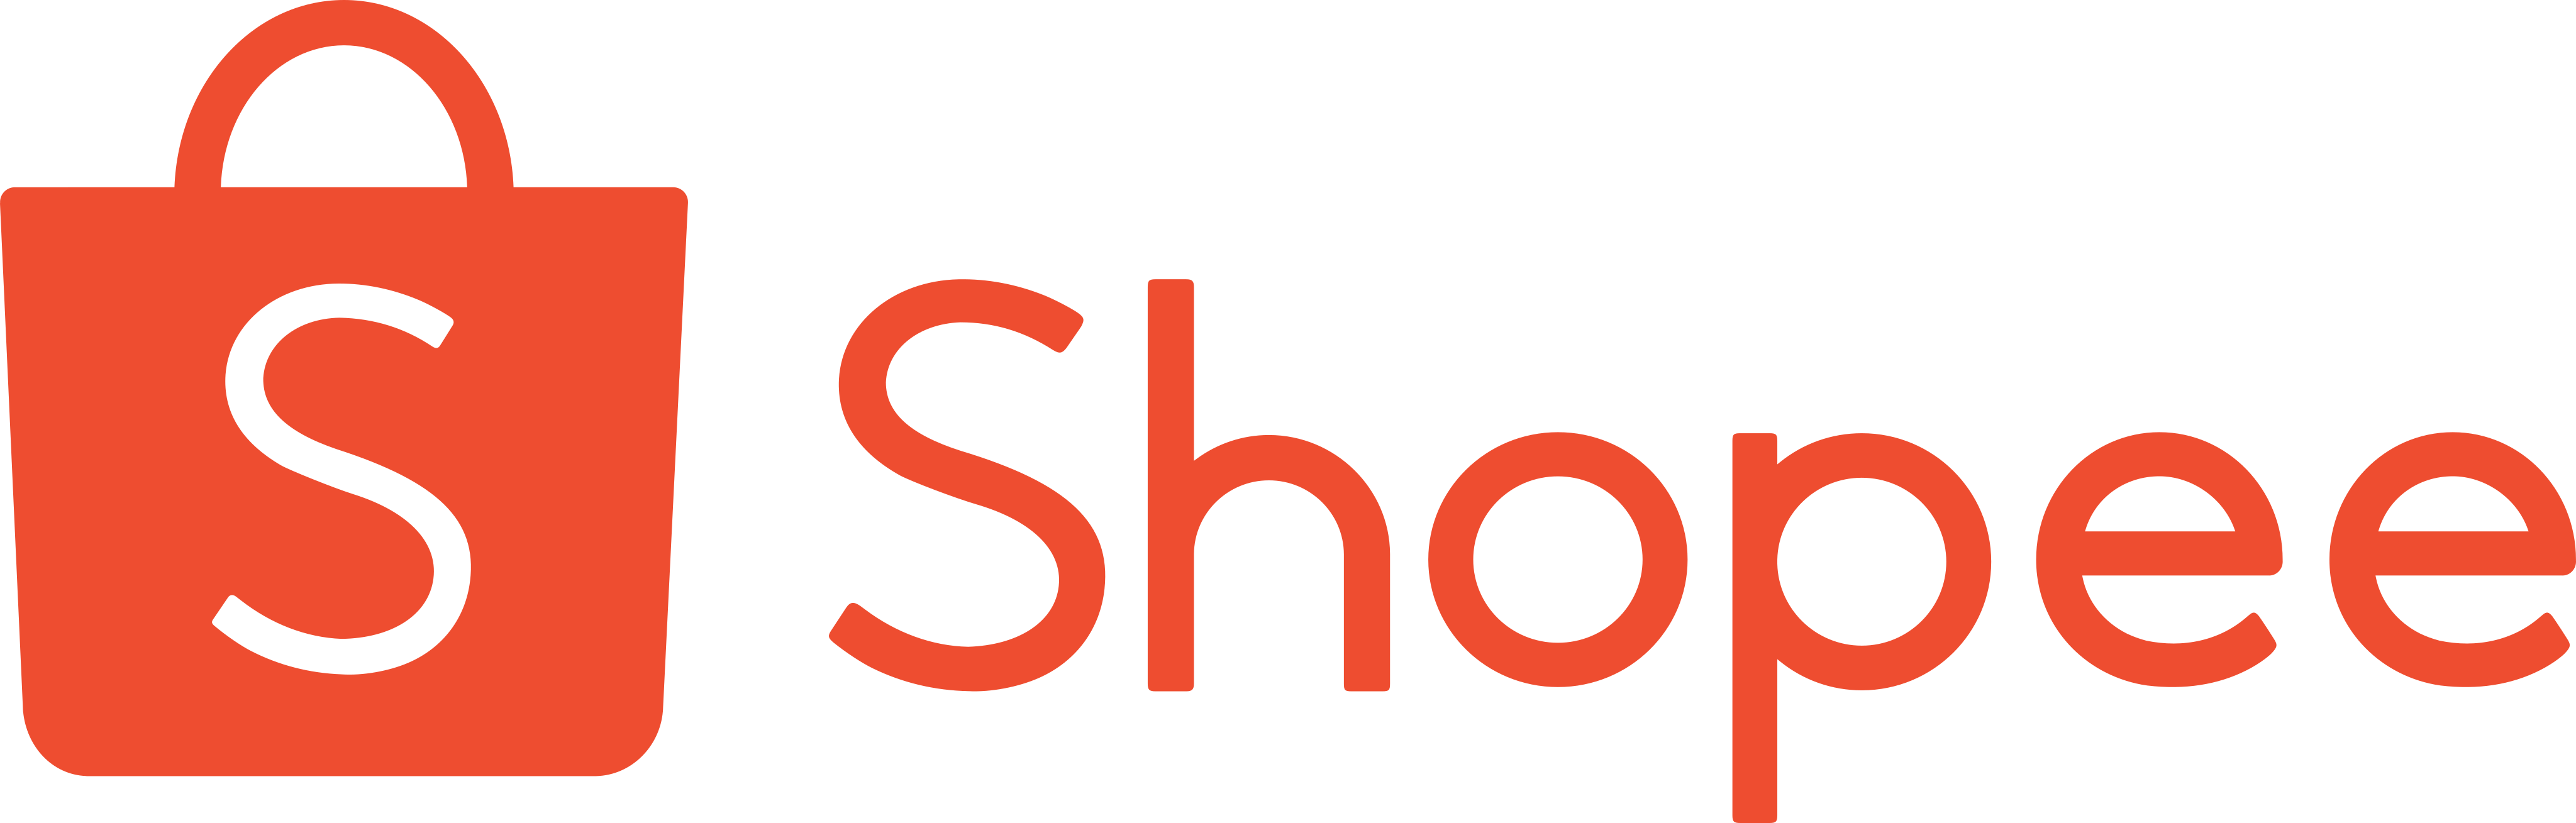 shopee logo - Shopee Logo